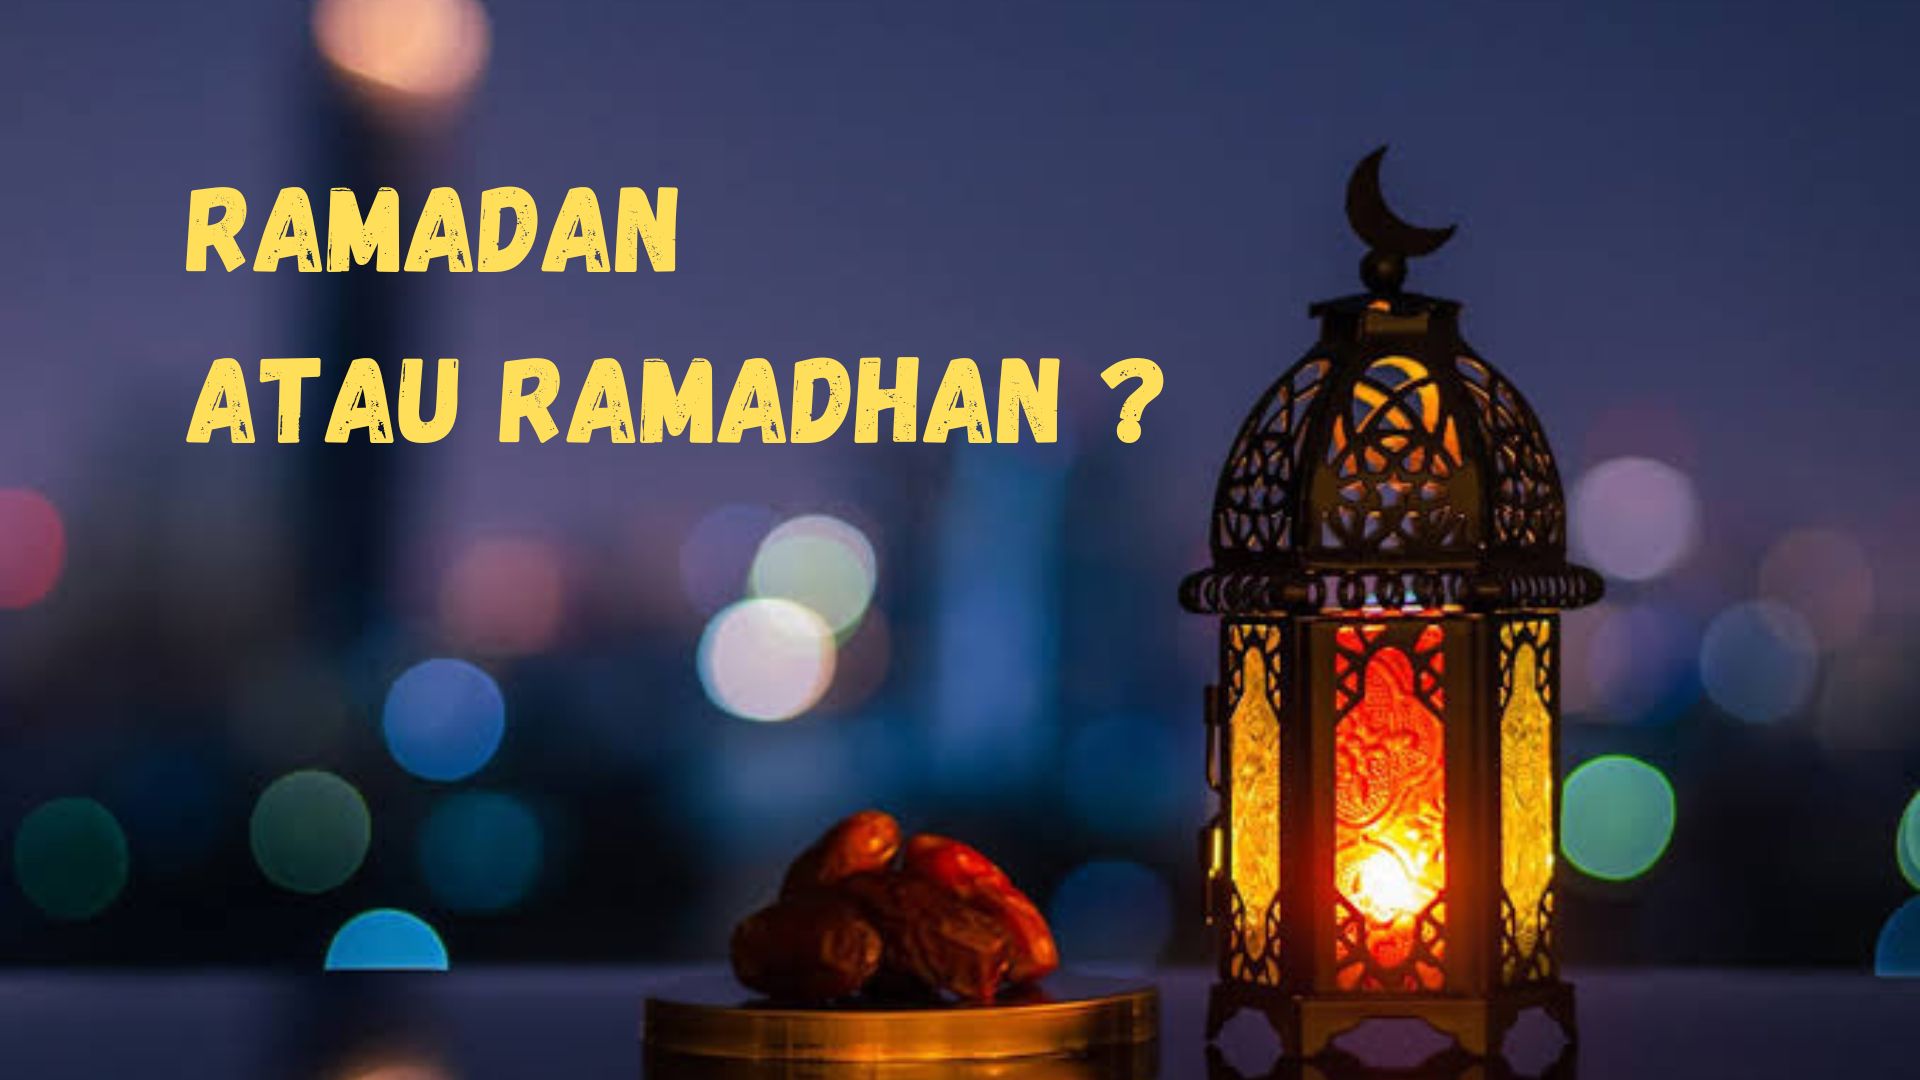 Masih Banyak yang Keliru, Ramadan atau Ramadhan Penulisan yang Benar? Simak Penjelasannya